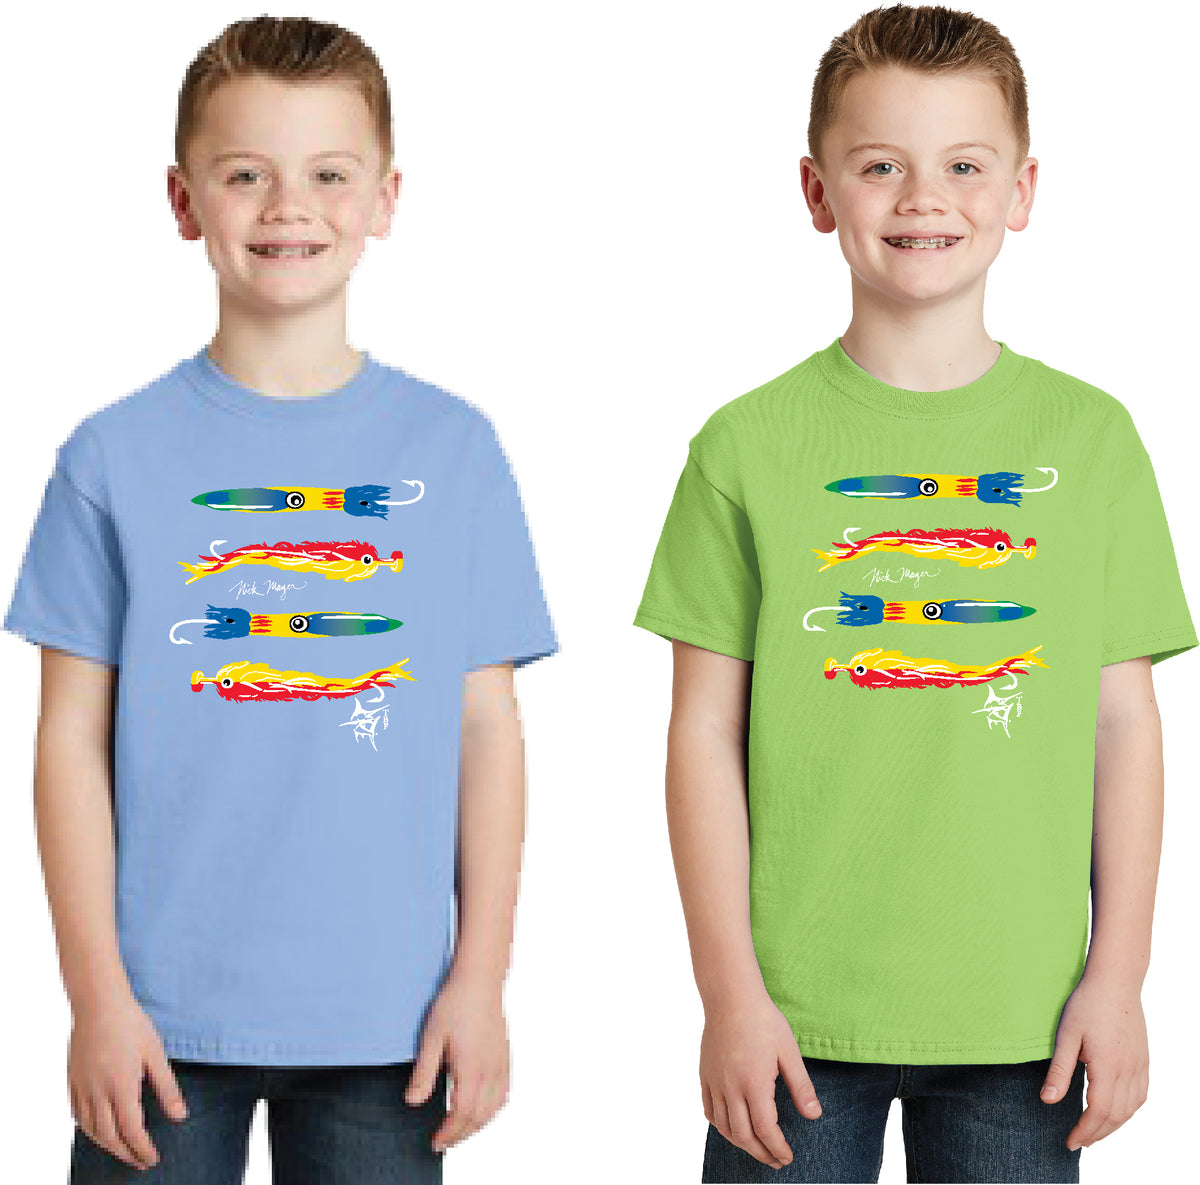 Nicklas Backstrom | Kids T-Shirt